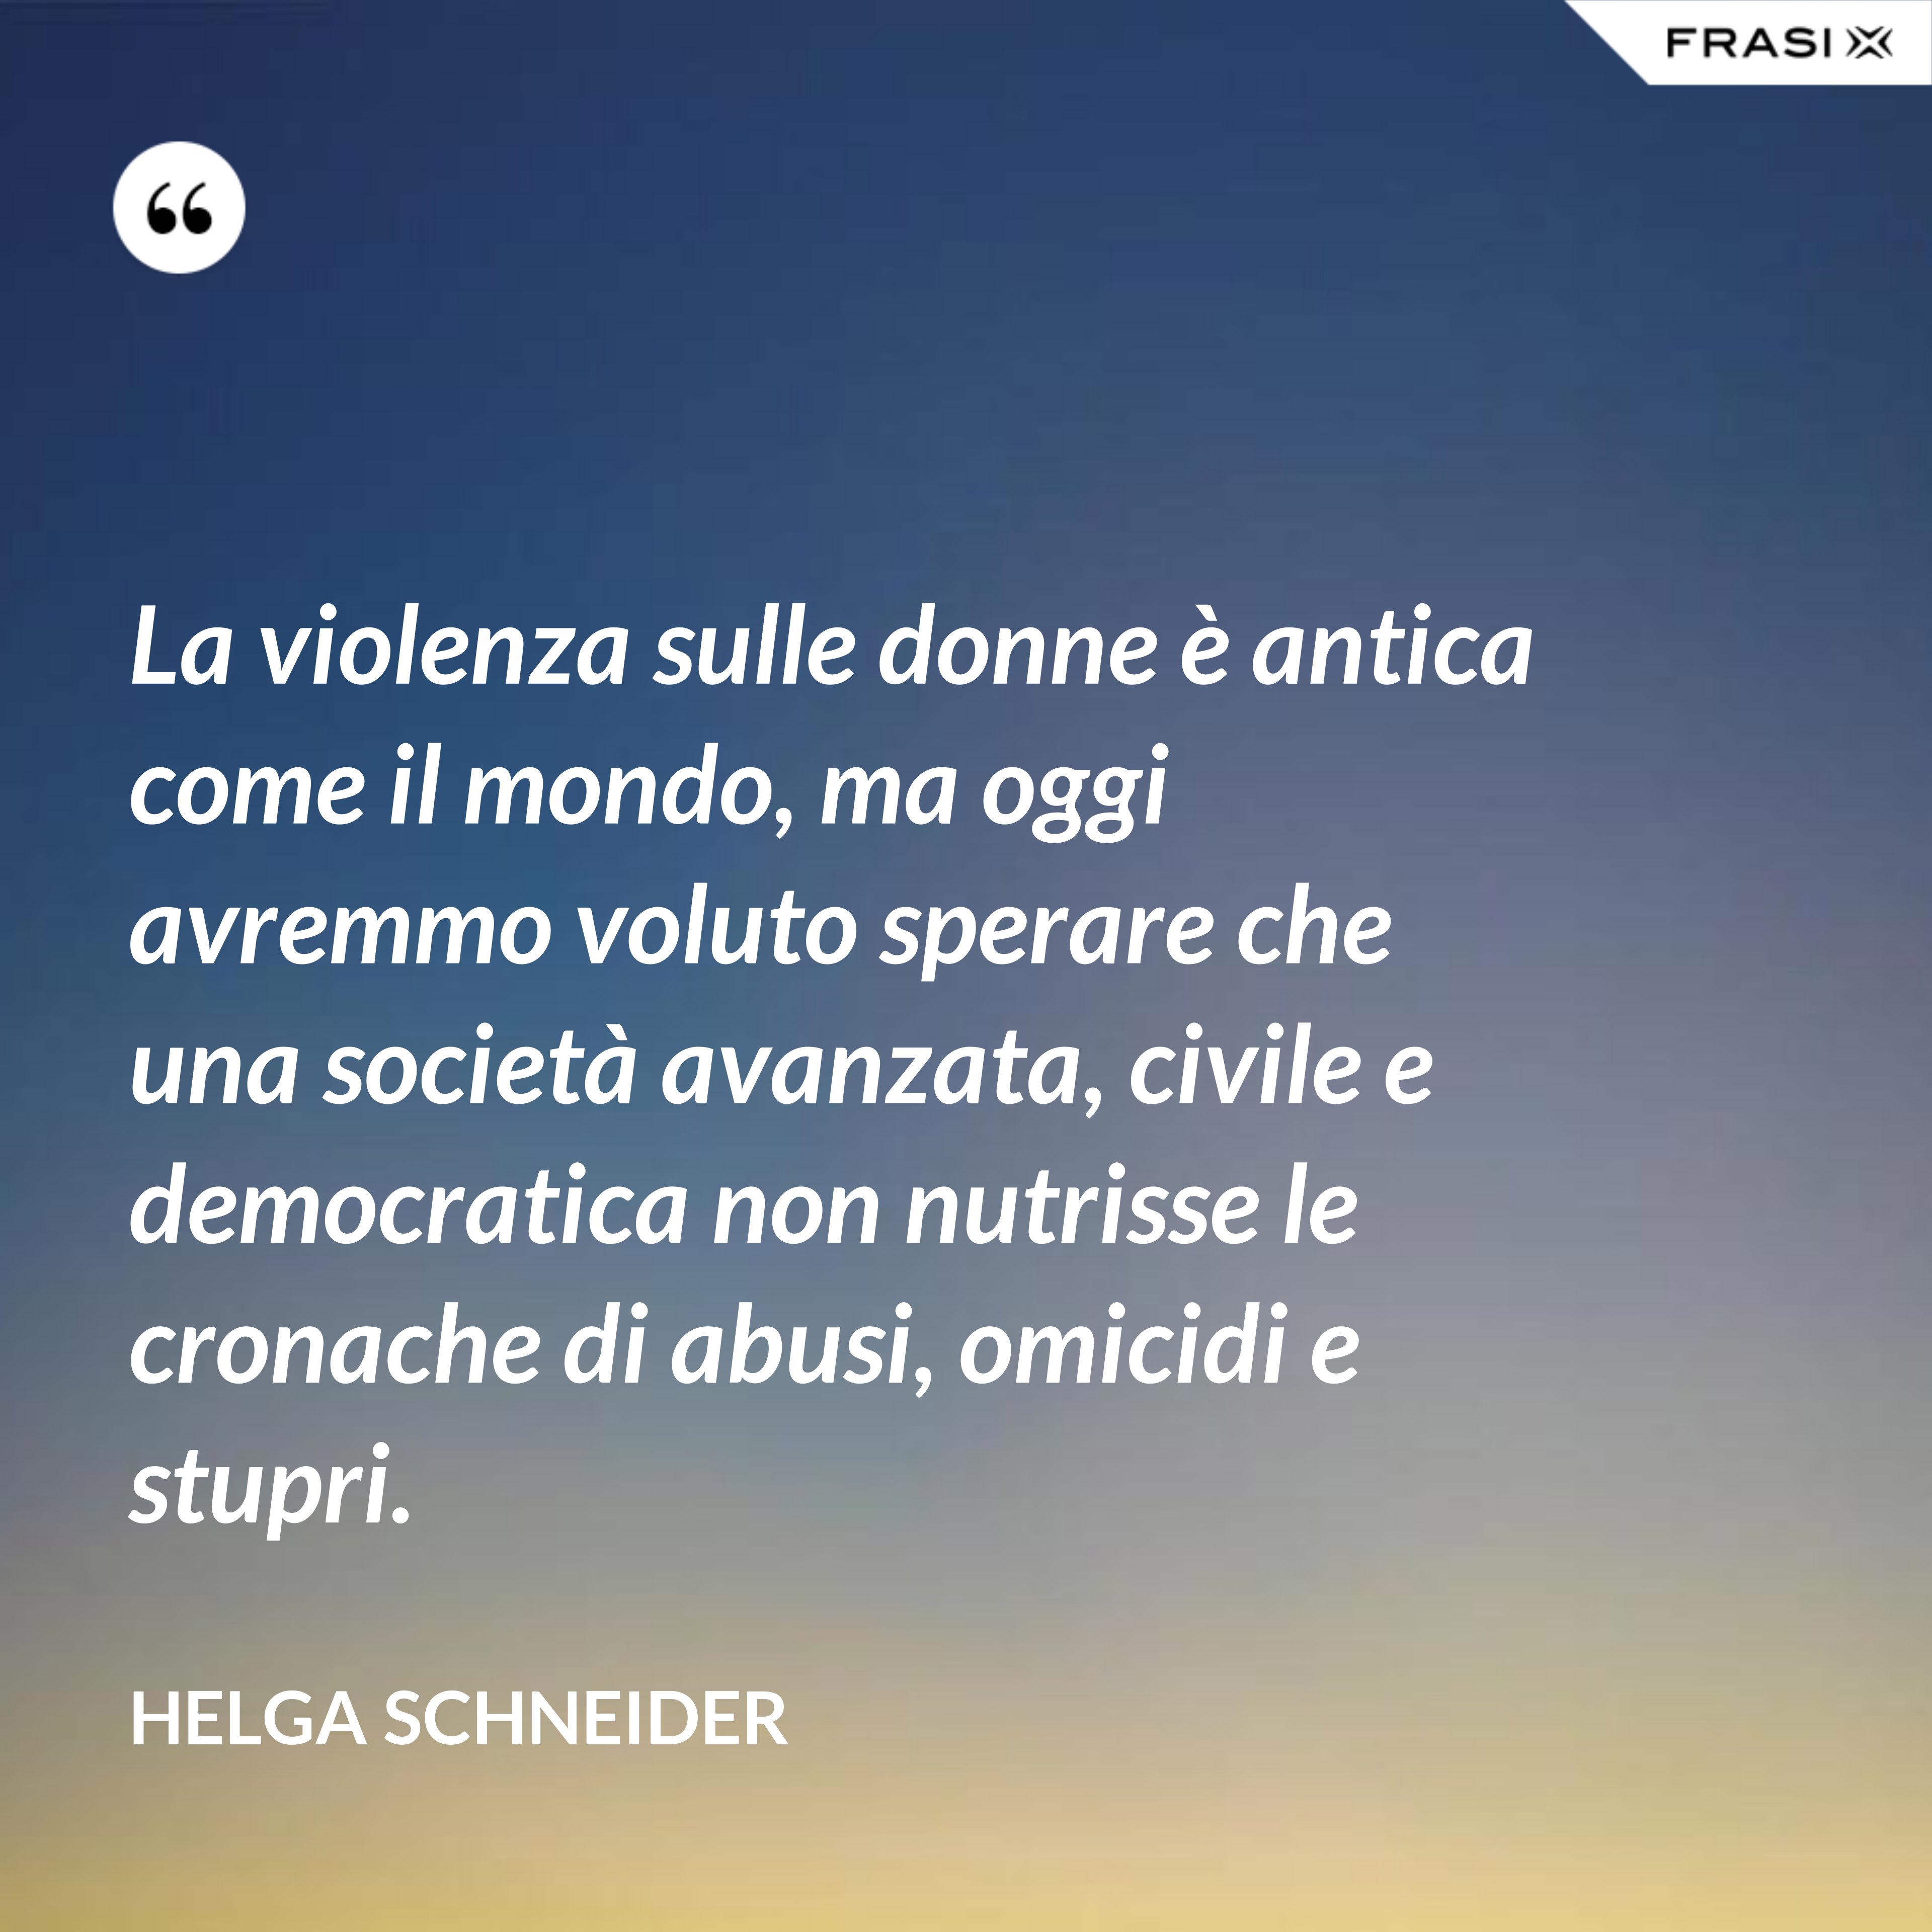 La violenza sulle donne è antica come il mondo, ma oggi avremmo voluto sperare che una società avanzata, civile e democratica non nutrisse le cronache di abusi, omicidi e stupri. - Helga Schneider